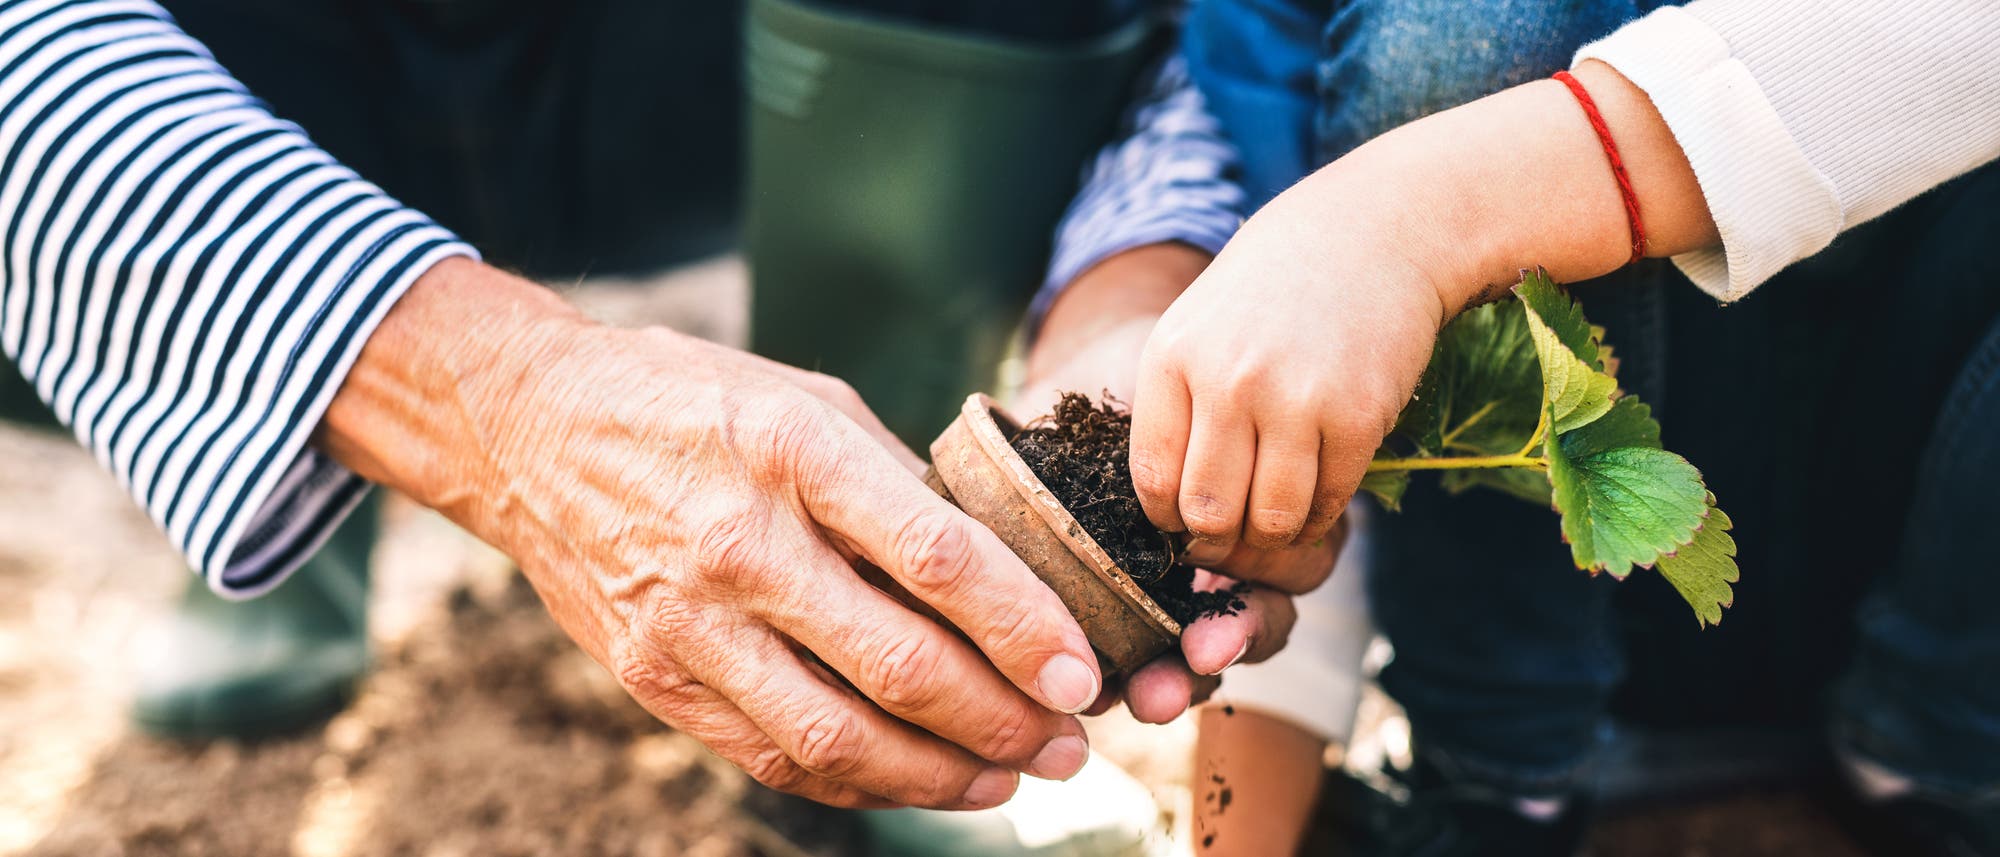 Älterer Mensch hilft Kind beim Gärtnern